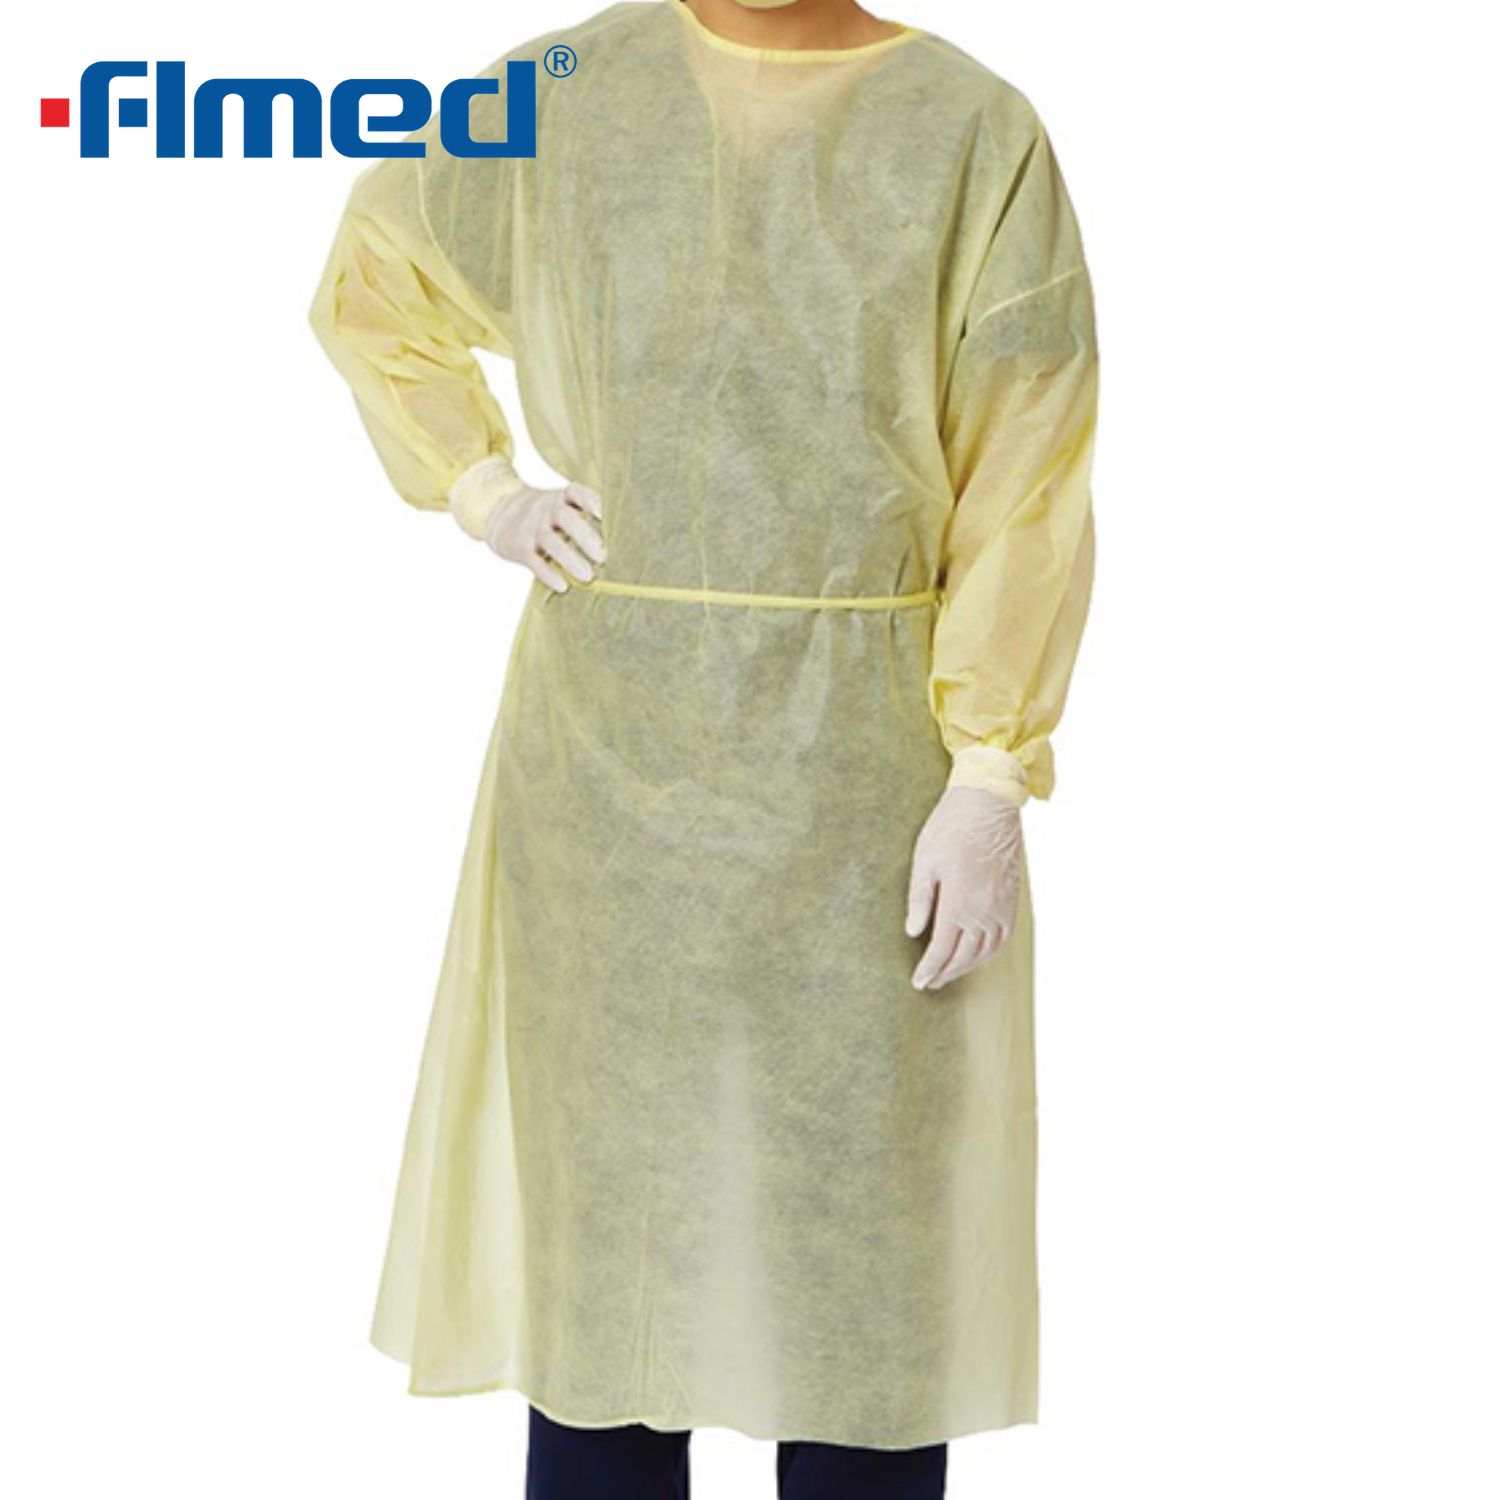 Medizinisches Kleid mit gestrickter Manschette, PP nicht gewebt, nicht steril